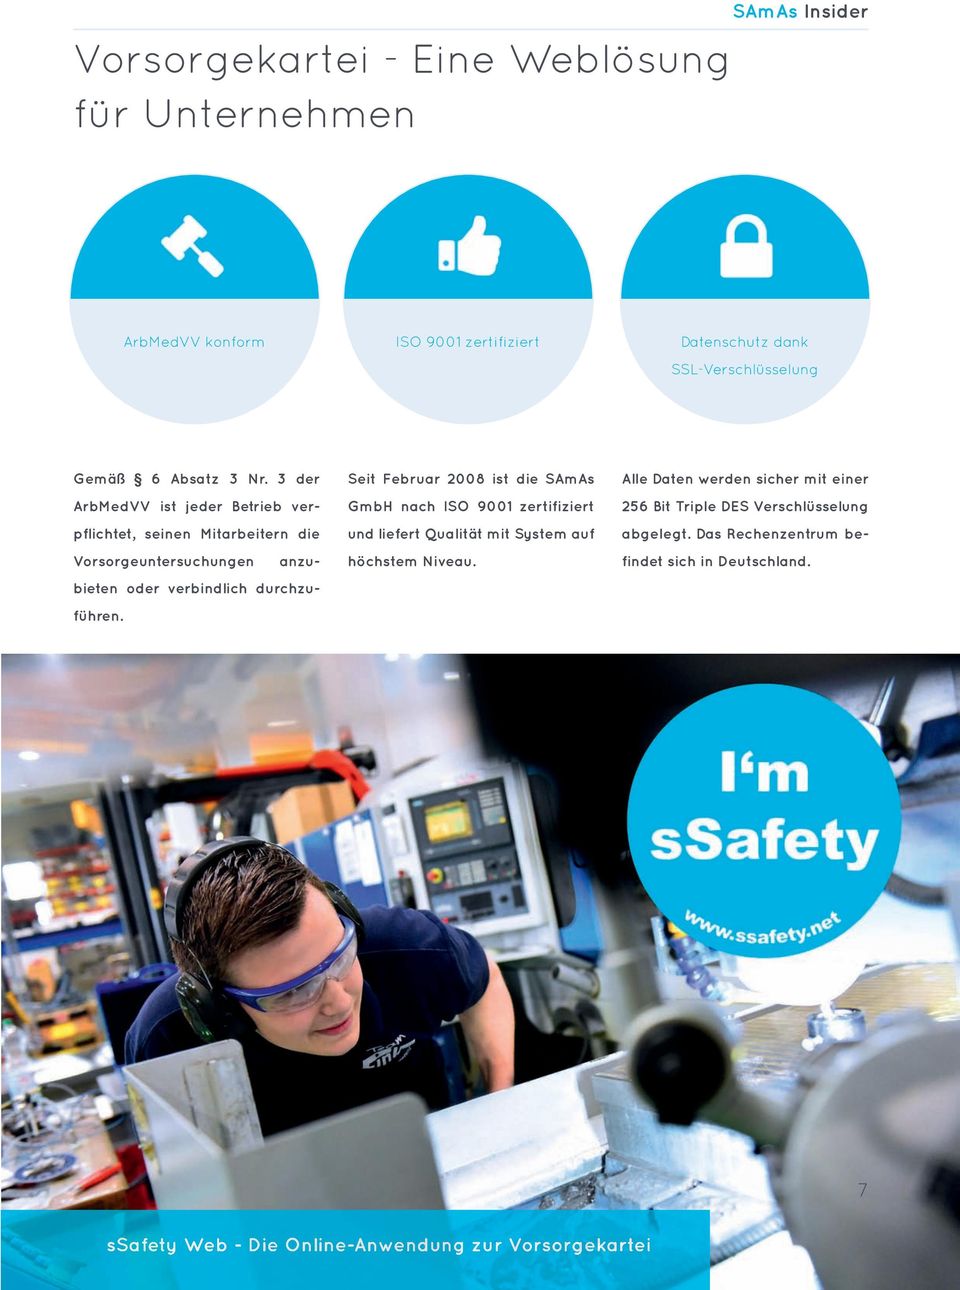 Seit Februar 2008 ist die SAmAs GmbH nach ISO 9001 zertifiziert und liefert Qualität mit System auf höchstem Niveau.